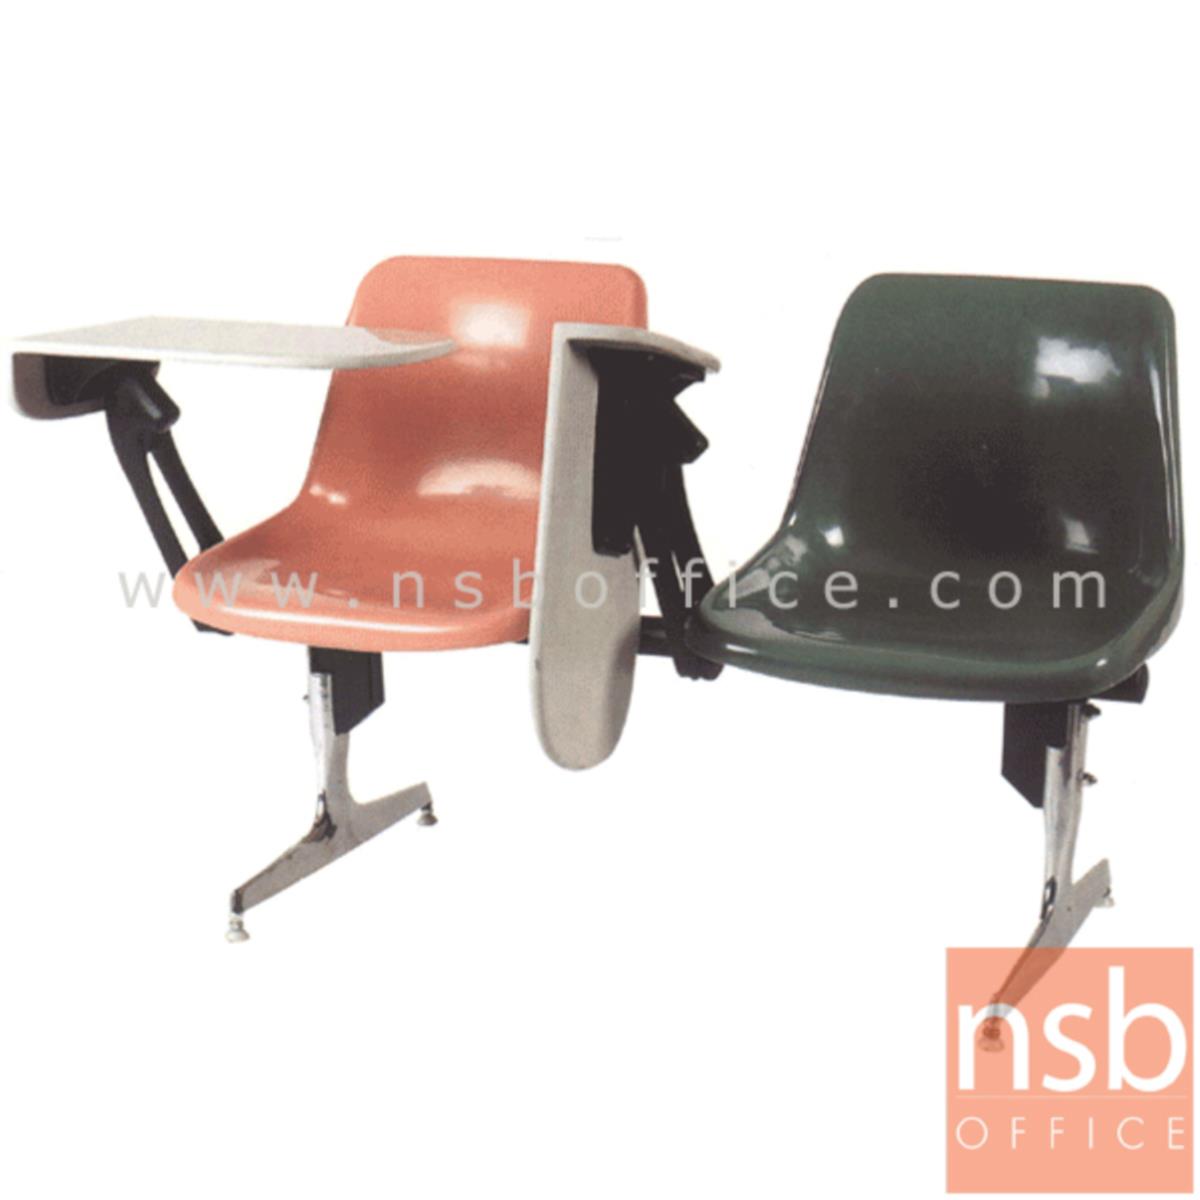 เก้าอี้เลคเชอร์แถวเฟรมโพลี่ รุ่น D390 2 ,3 และ 4 ที่นั่งขาอลูมิเนียมขัดเงา